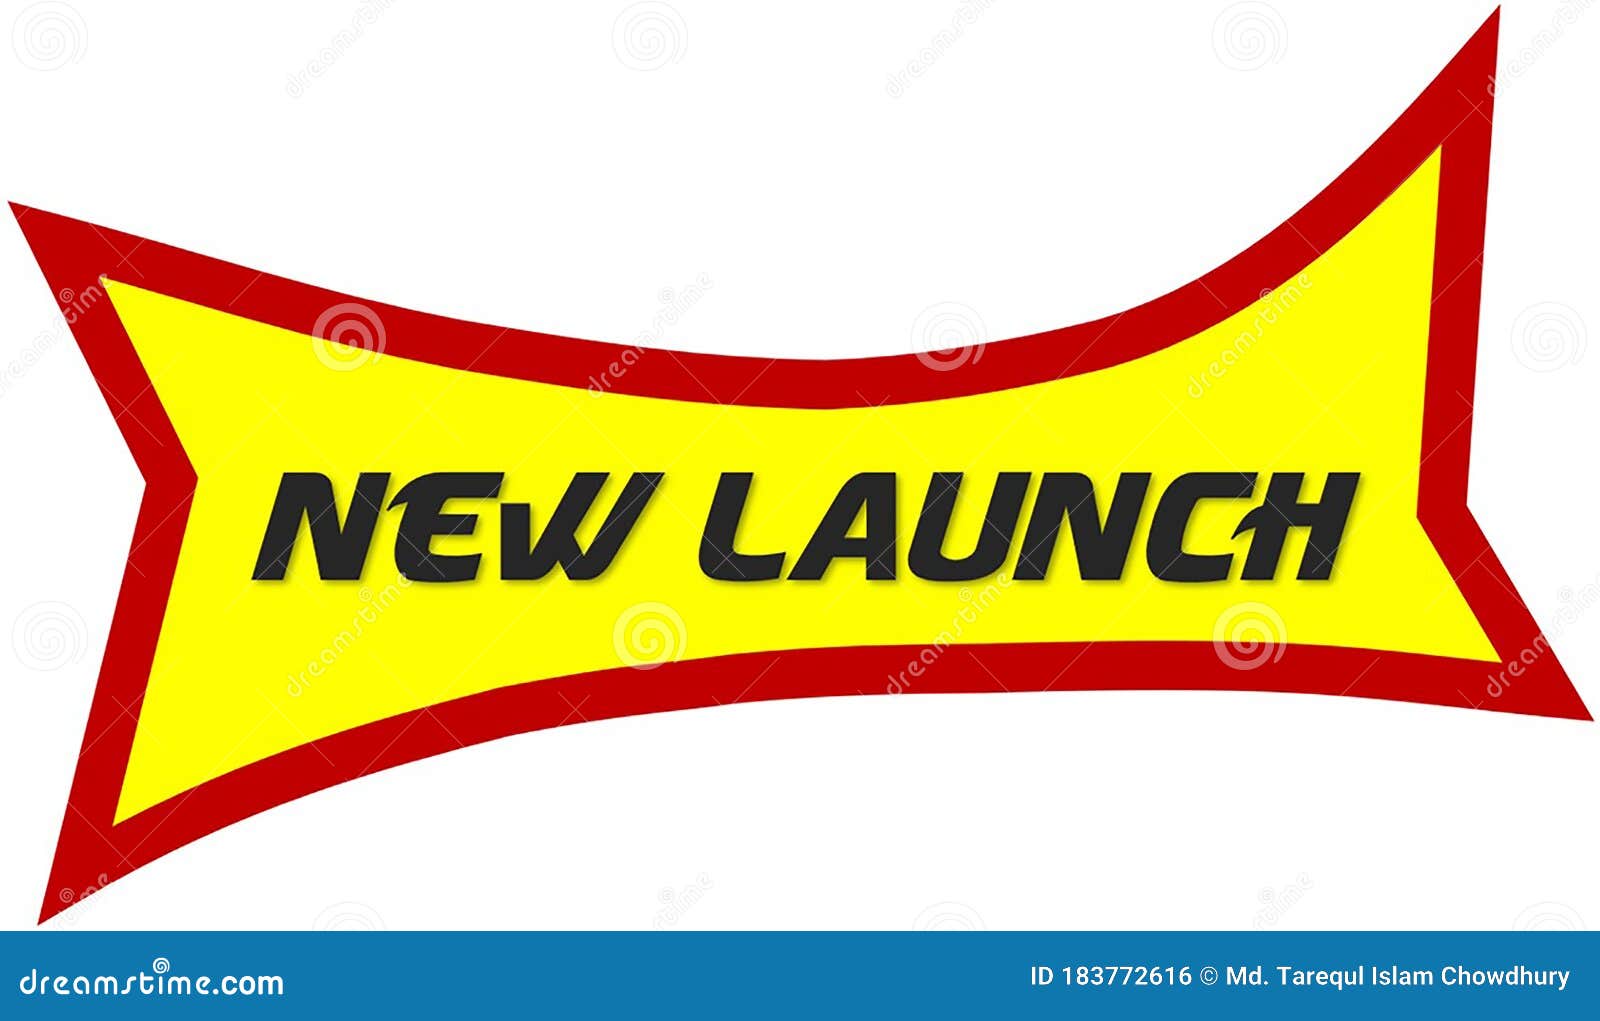 Logo Launch 3.0 - Premium Logo Design Service